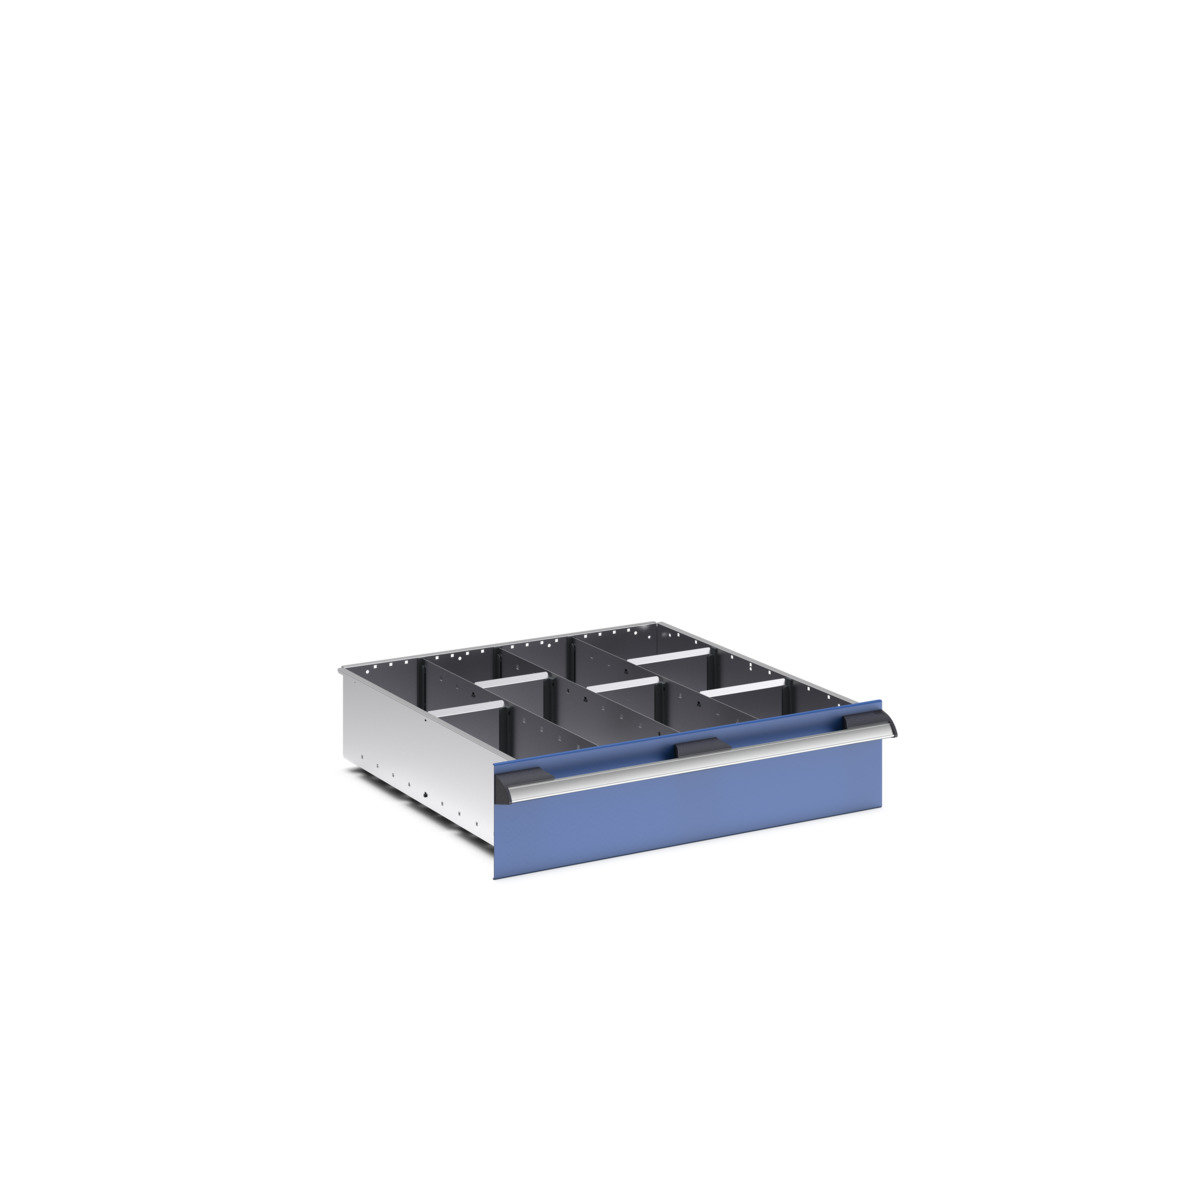 43020645.51 - cubio adjustable divider kit